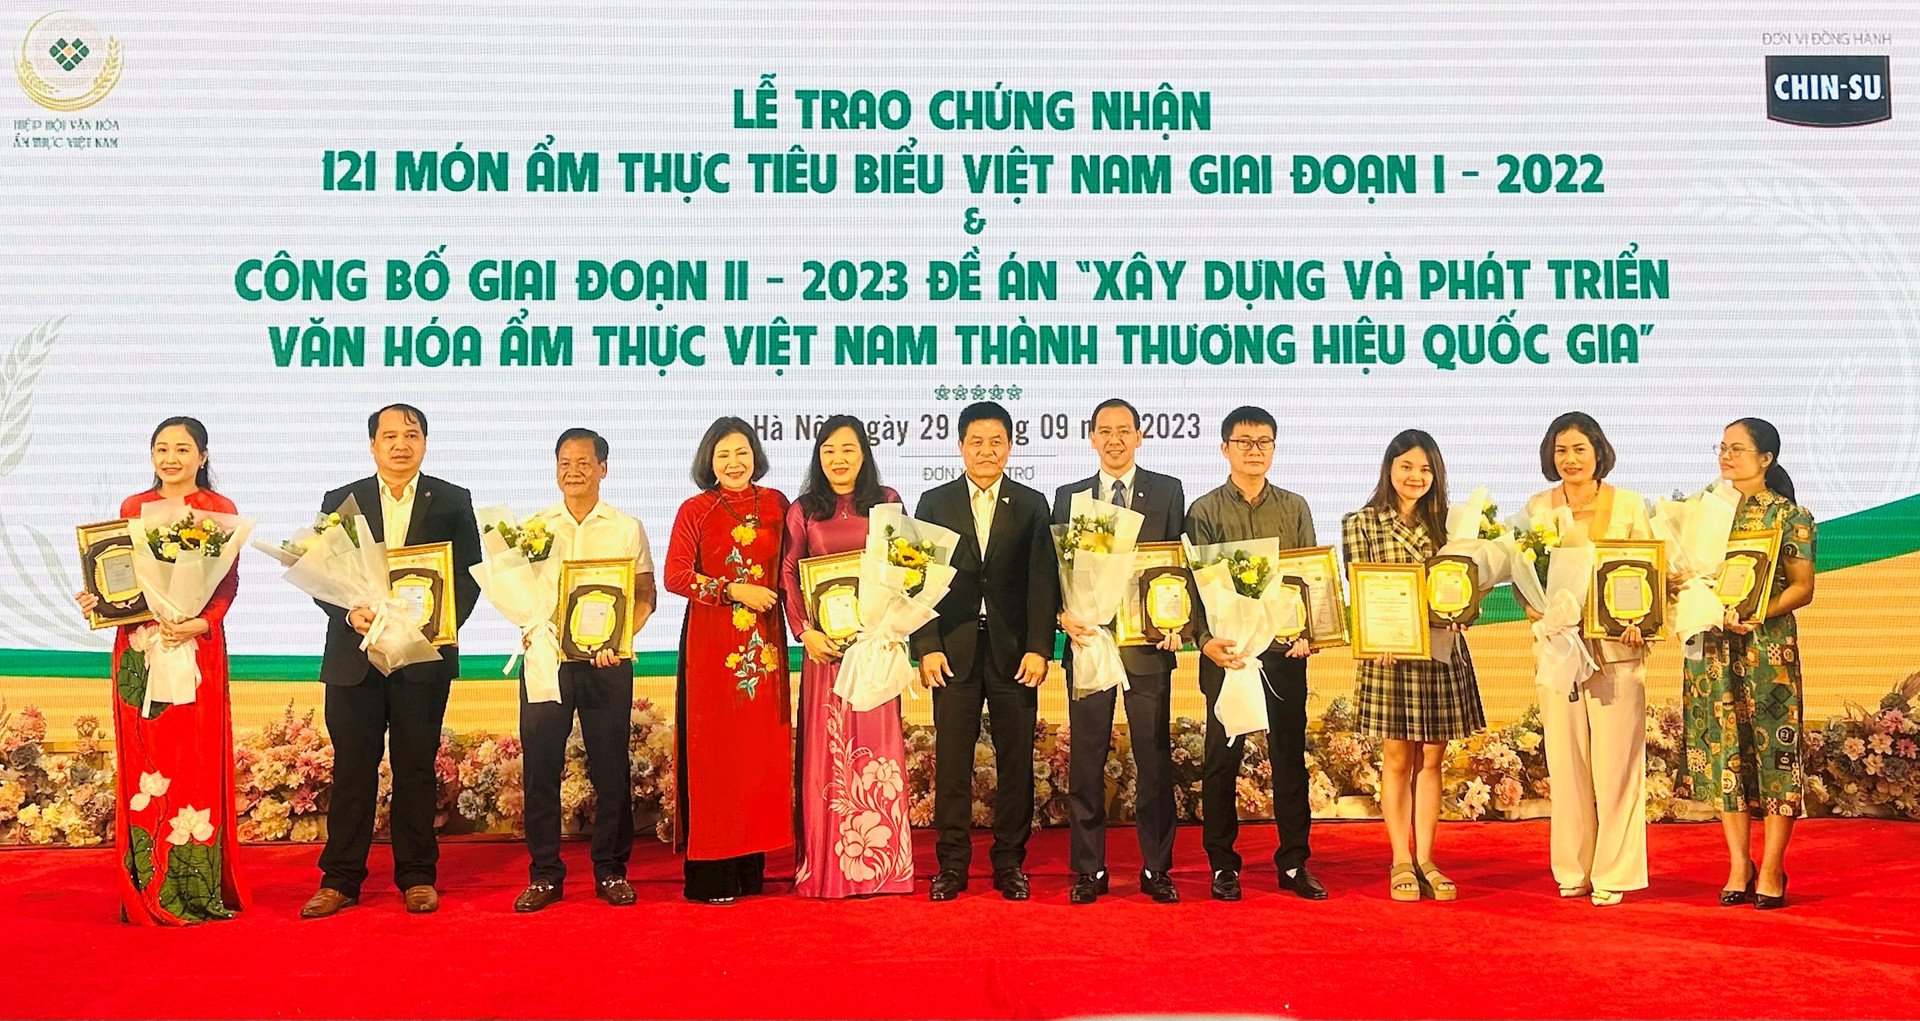 Đại diện Ban Tổ chức trao chứng nhận cho các món ẩm thực tiêu biểu Việt Nam giai đoạn I-2022. Ảnh: Hồng Thắm.